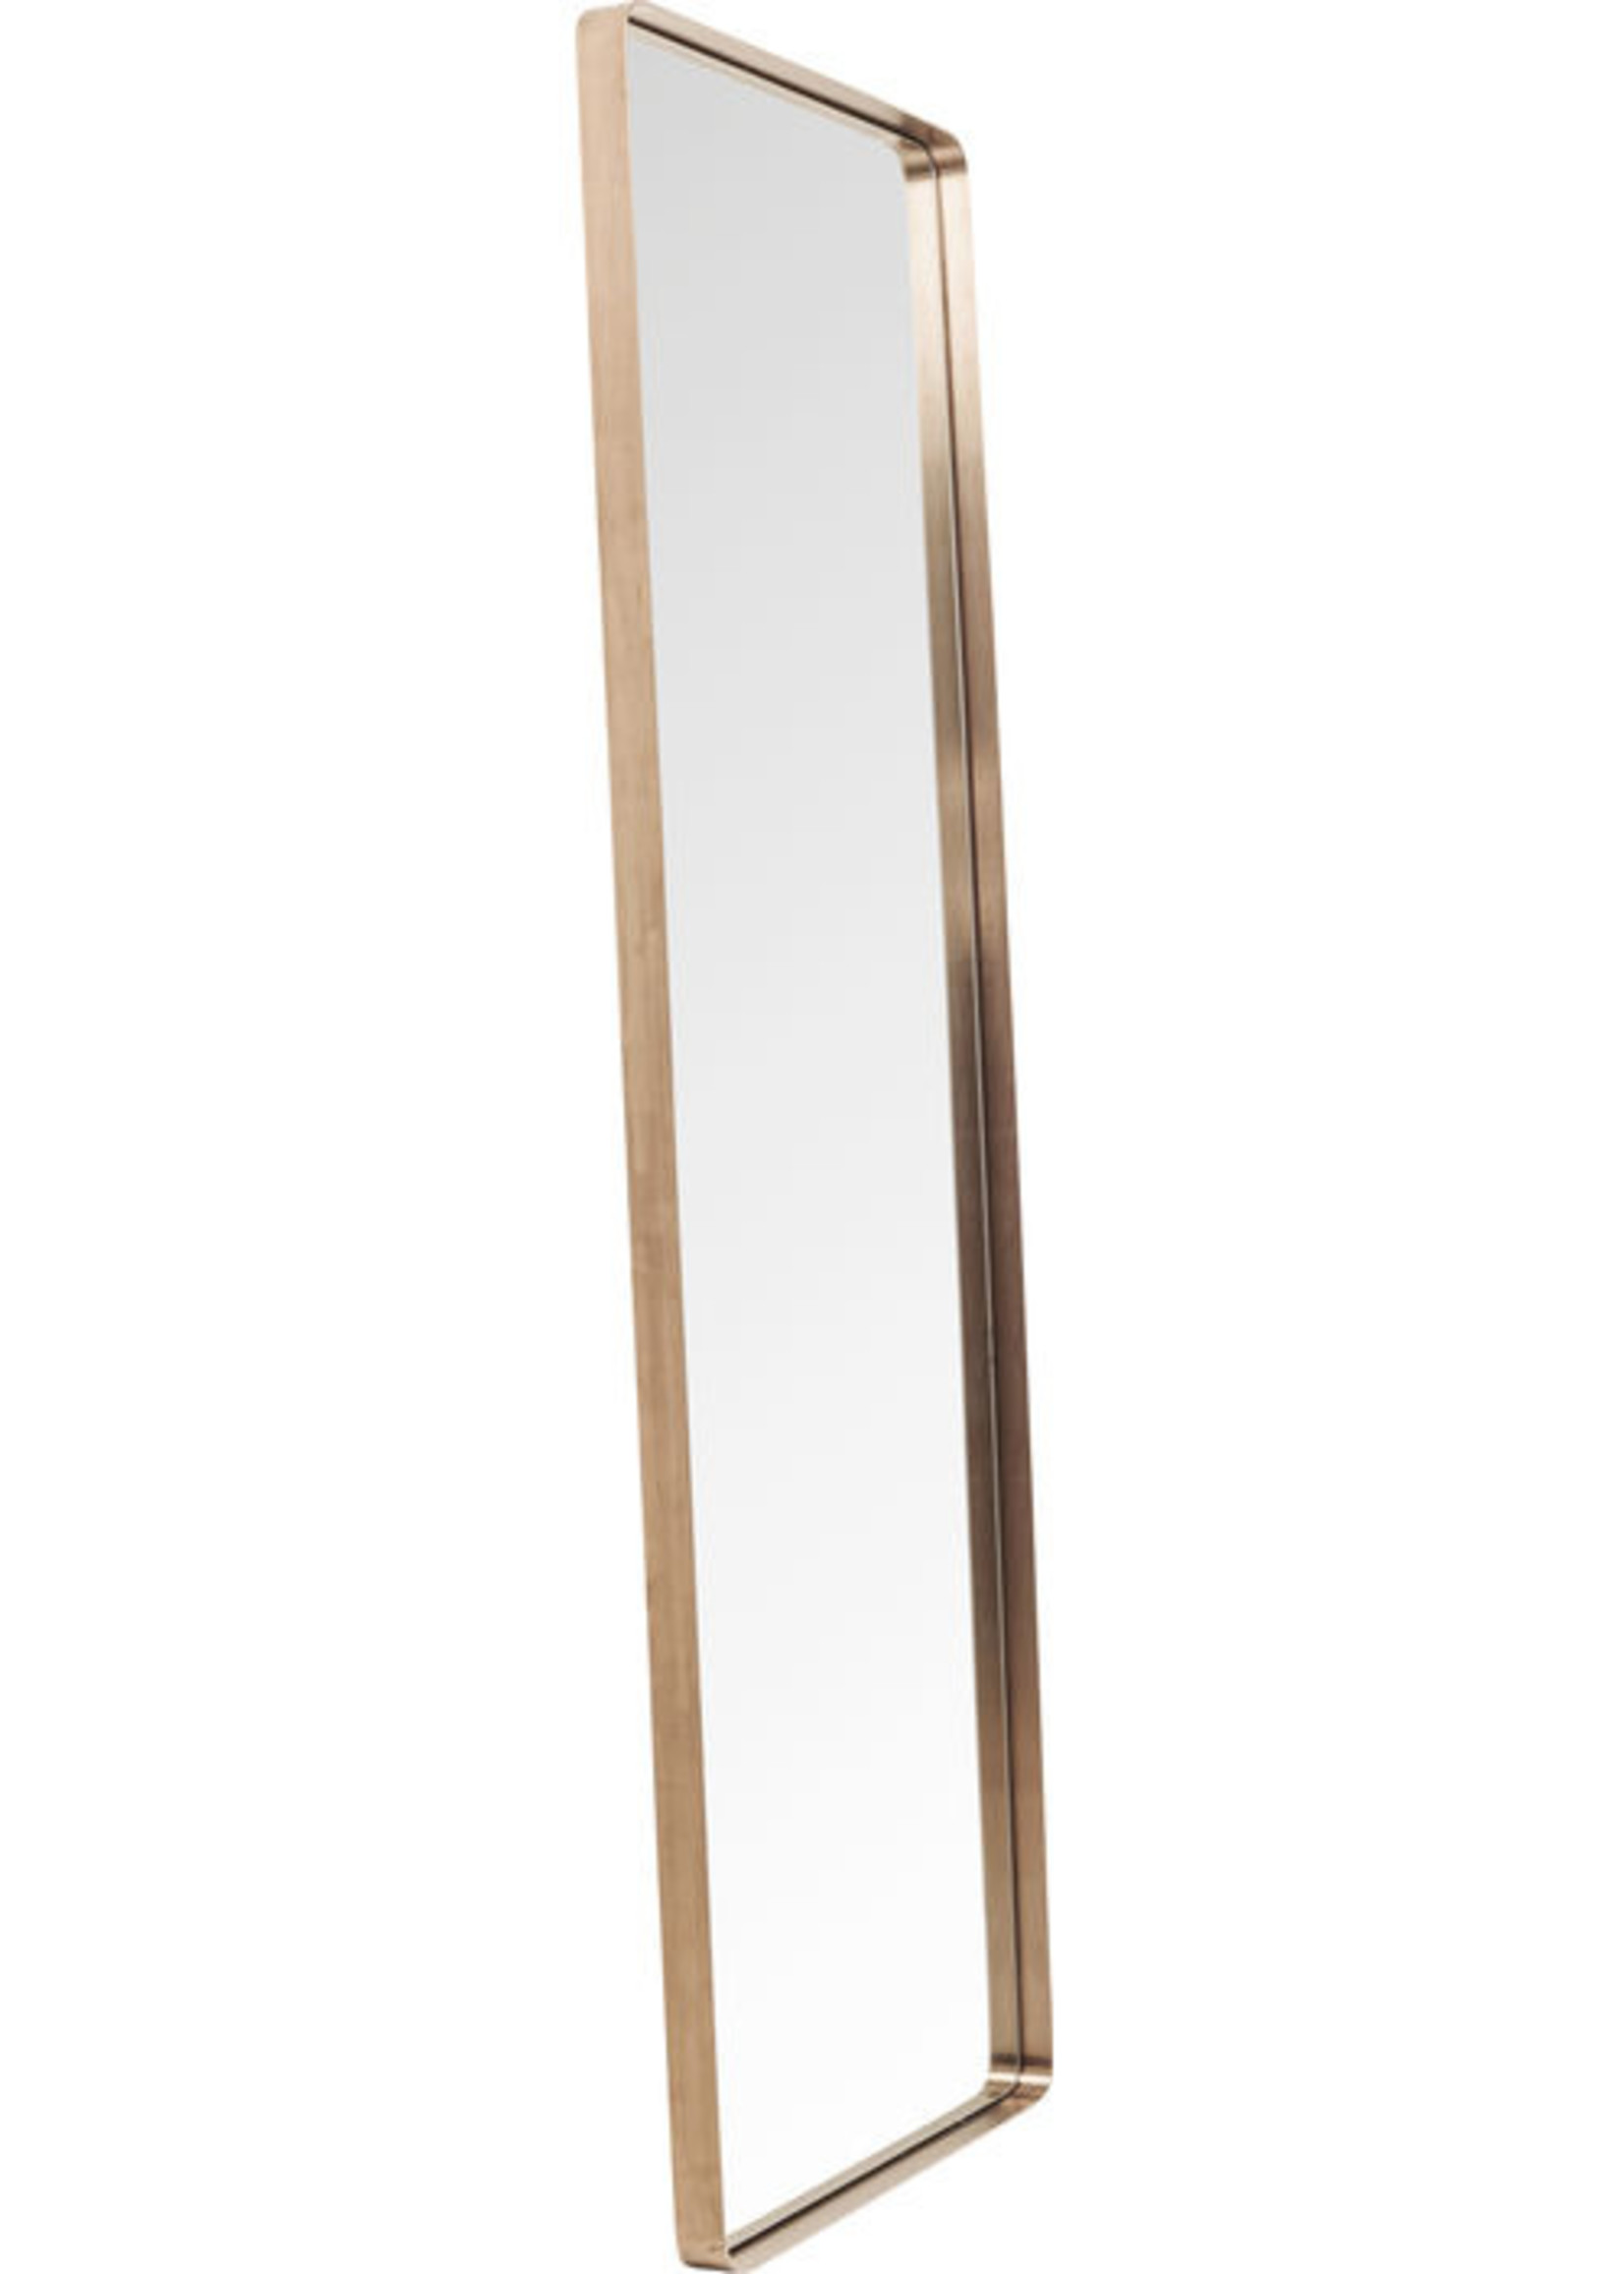 KARE DESIGN Mirror Curve Rectangular Copper 200x70cm